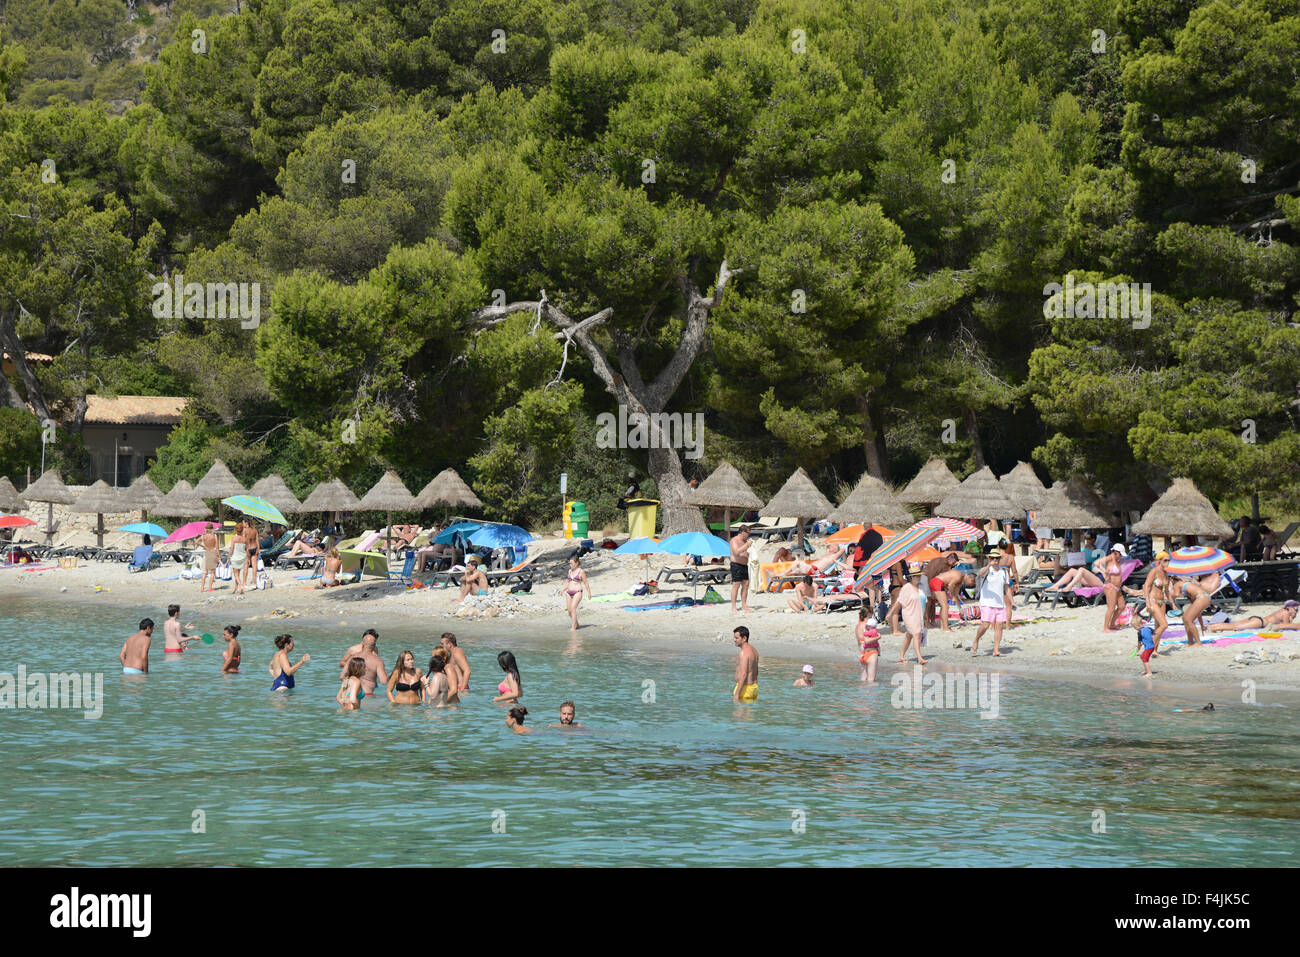 La plage de Formentor, Majorque ou Mallorca, Espagne Banque D'Images